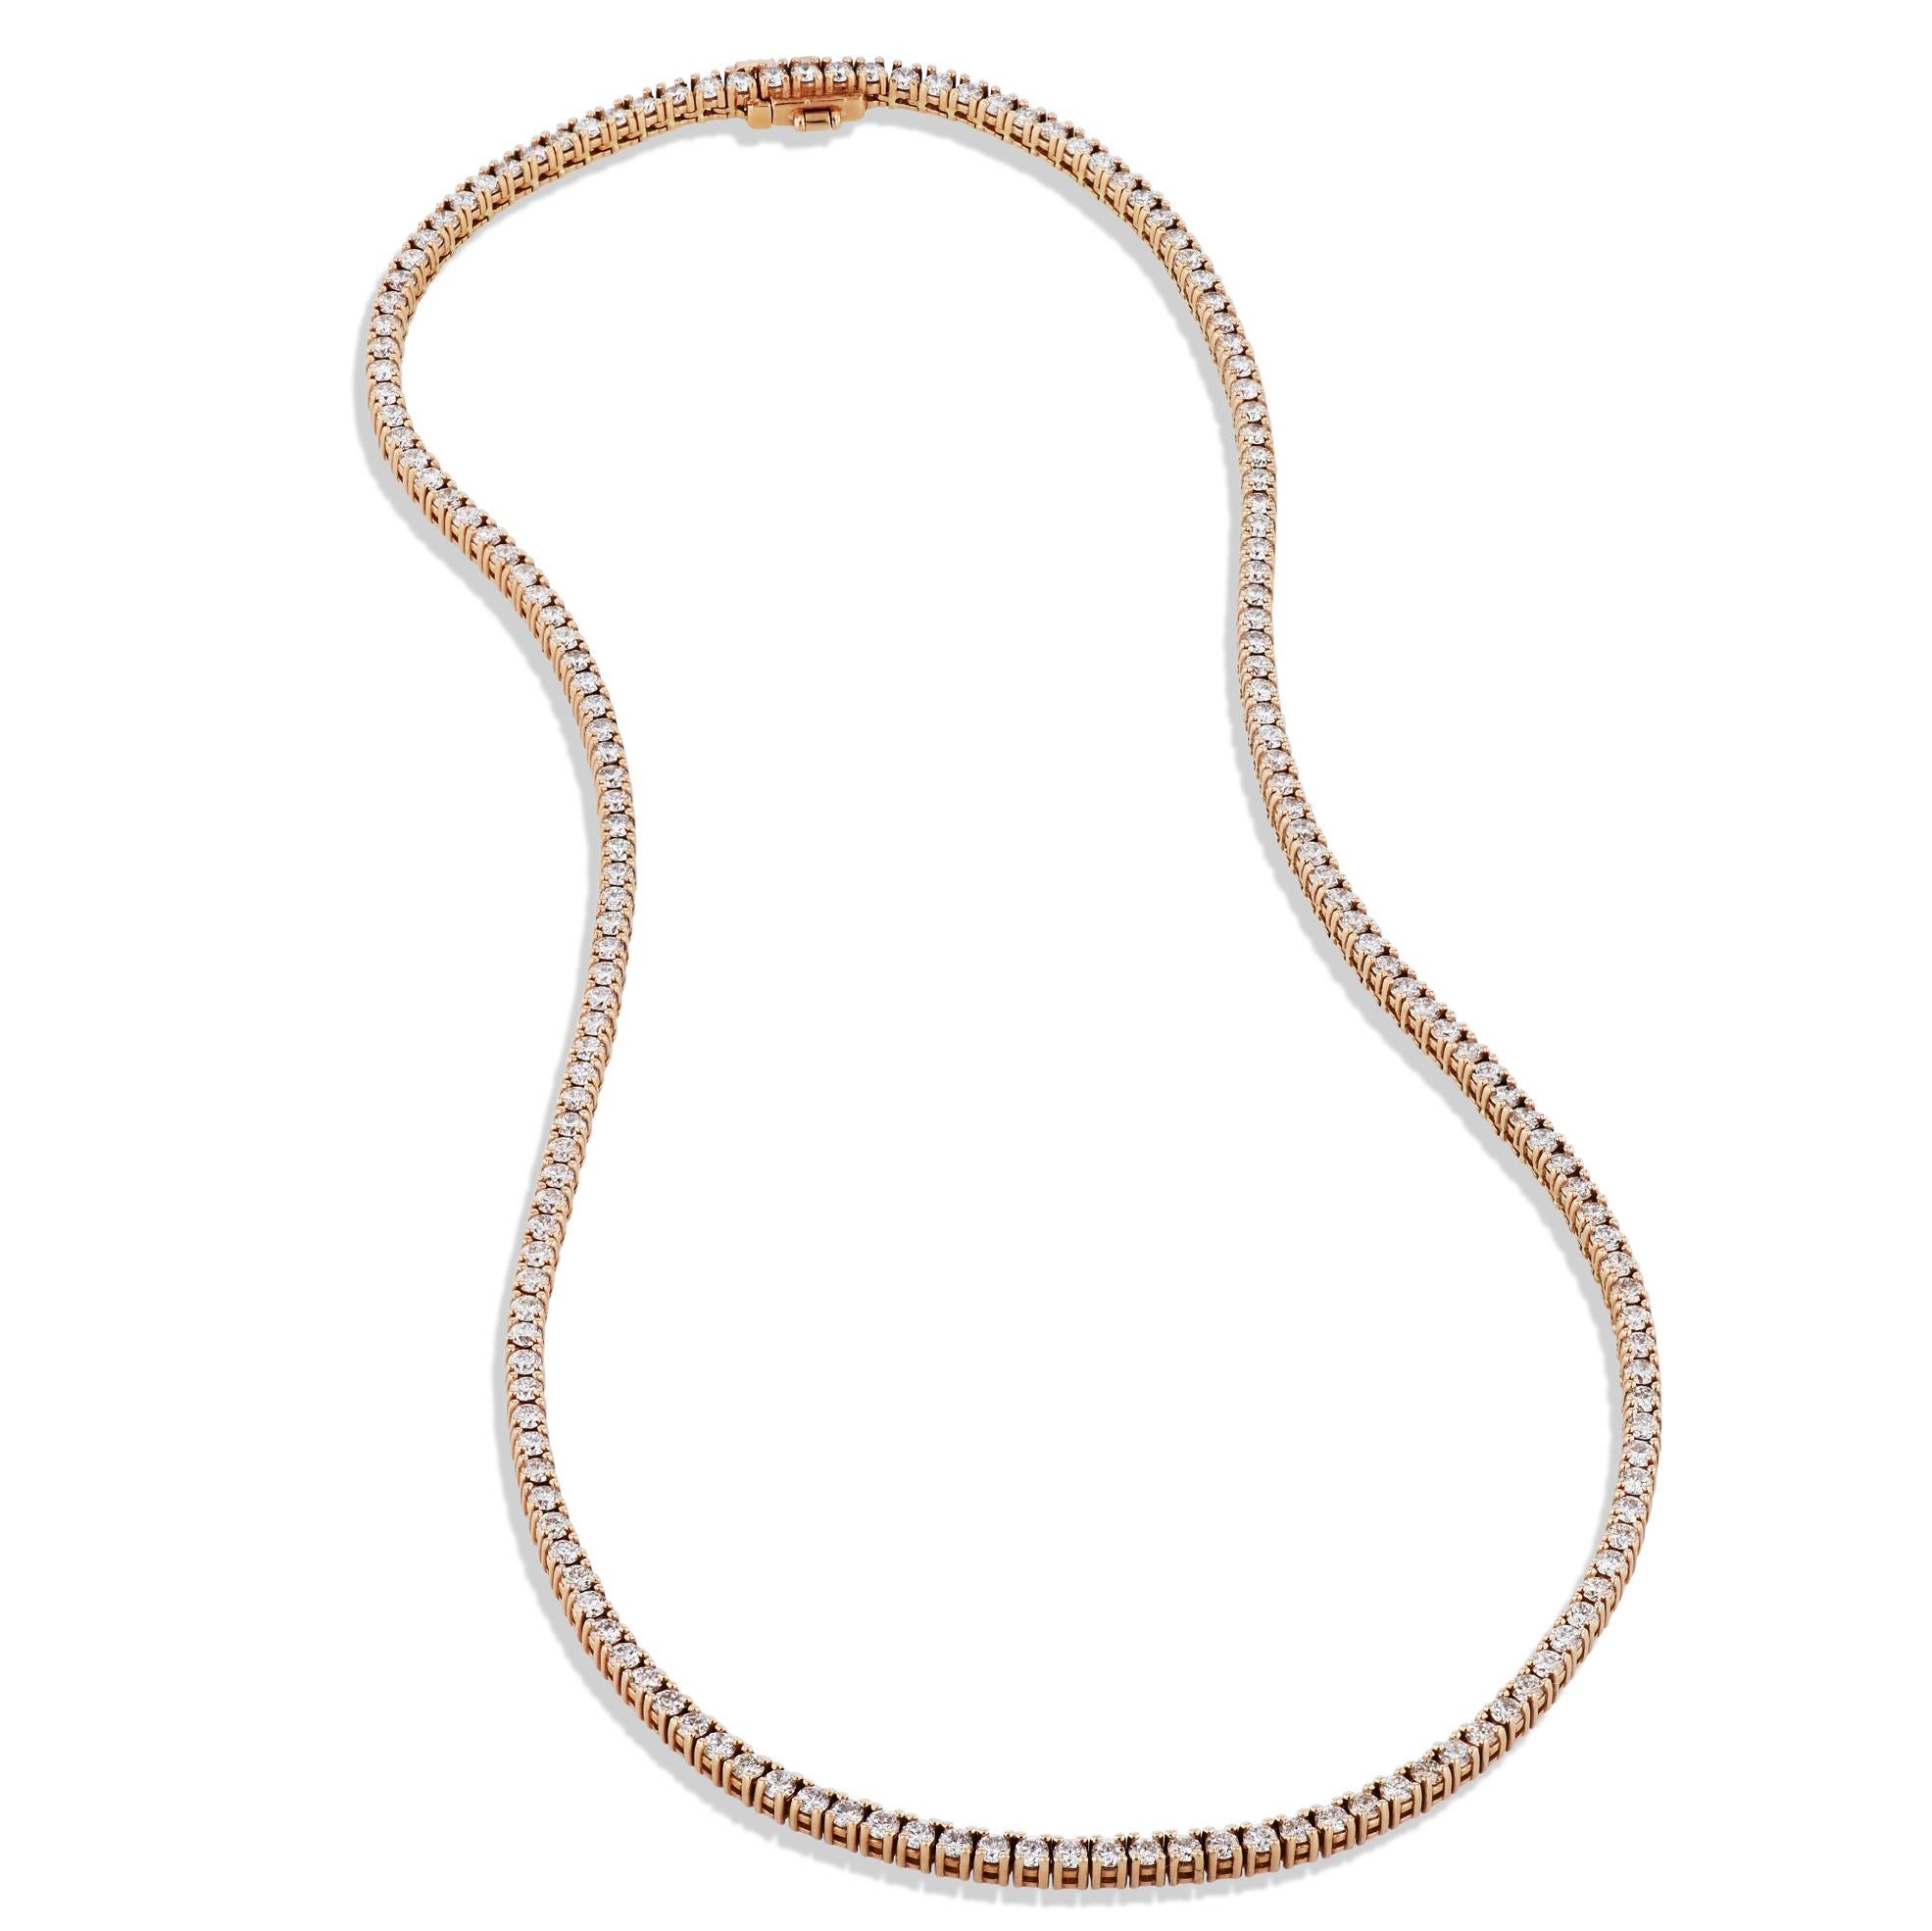 Diese atemberaubende Diamant-Tennis-Halskette aus 18 Karat Roségold ist mit 174 schillernden Diamanten besetzt. Die 16-Zoll-Halskette ist mit anmutigen Diamanten besetzt, die eine fesselnde Aura verbreiten.

Tennis-Halskette aus Roségold mit